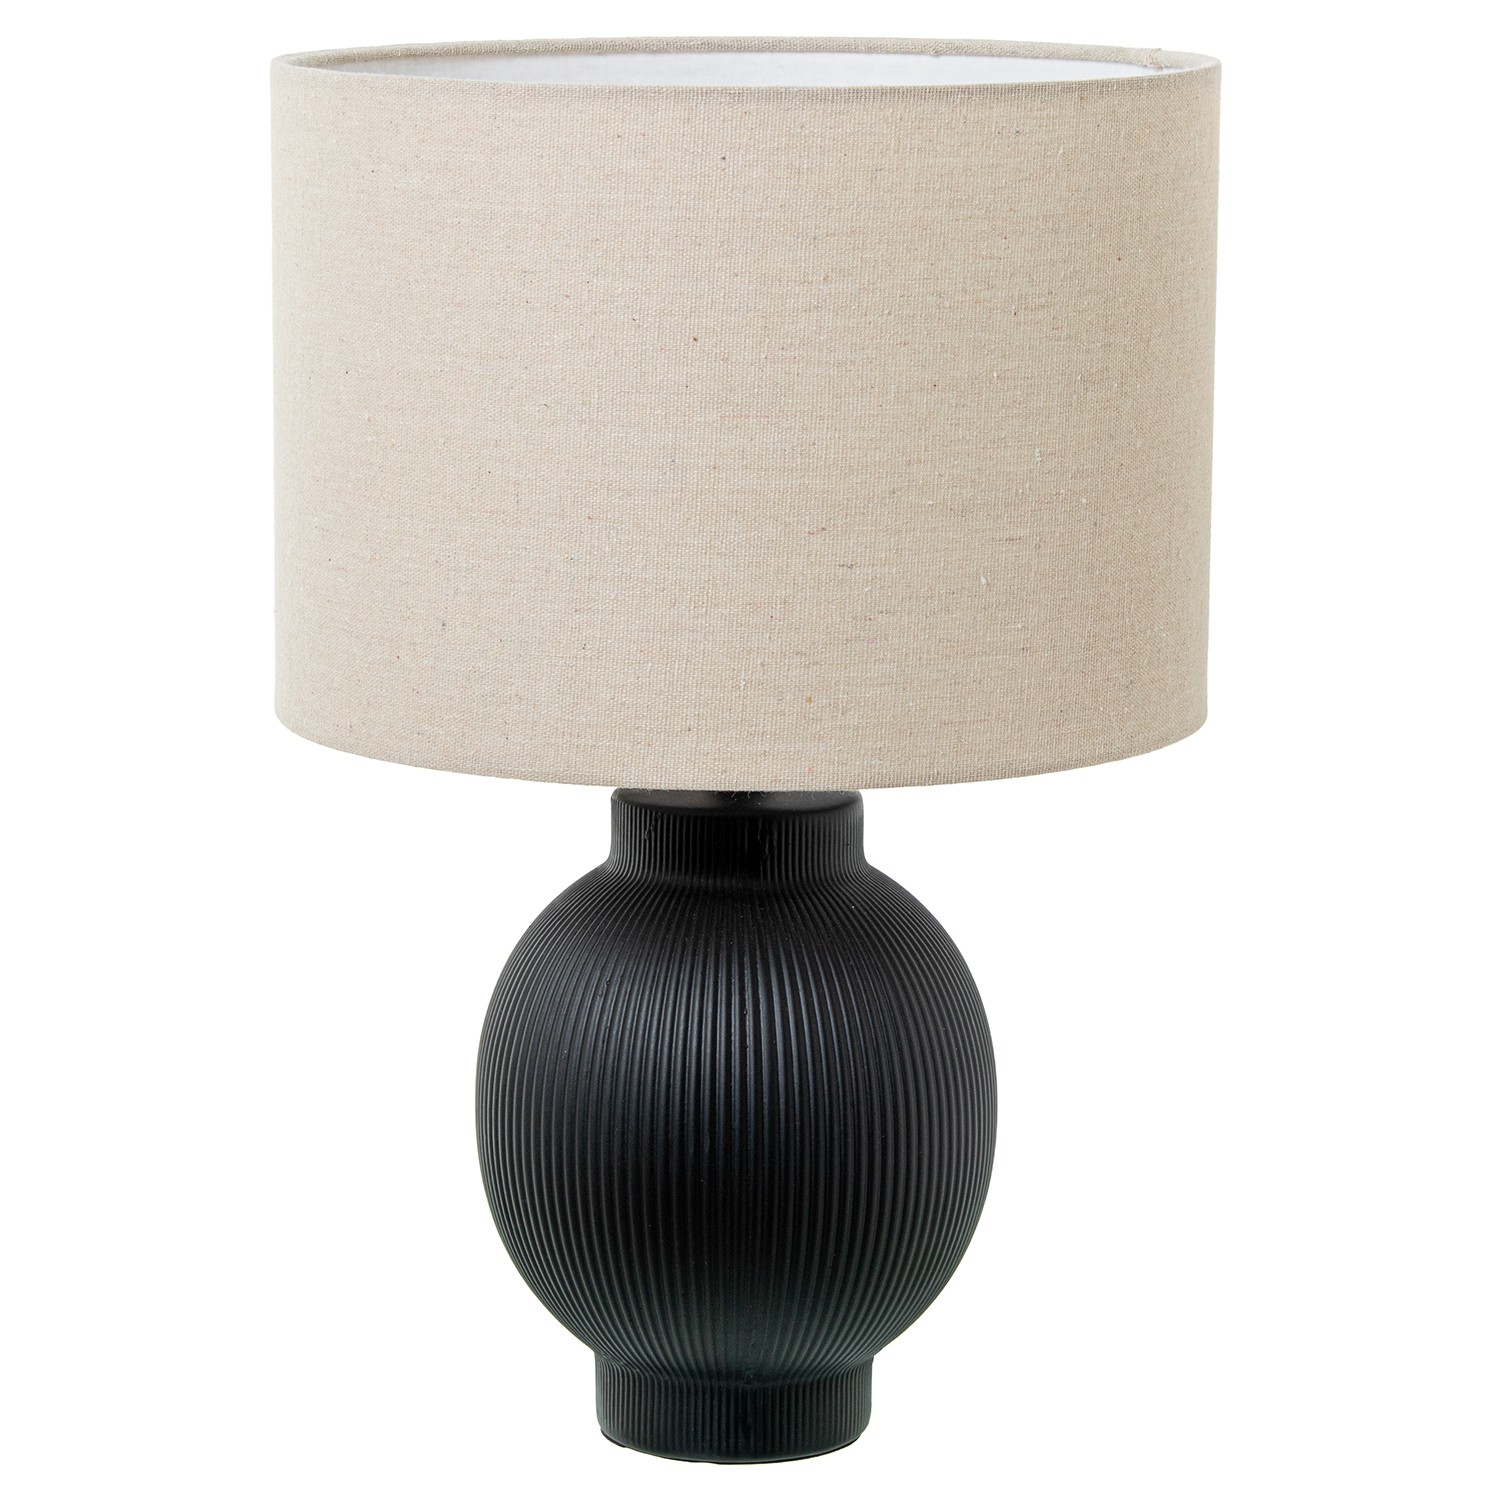 35622-lampara-nordica-ceramica-negro.jfif